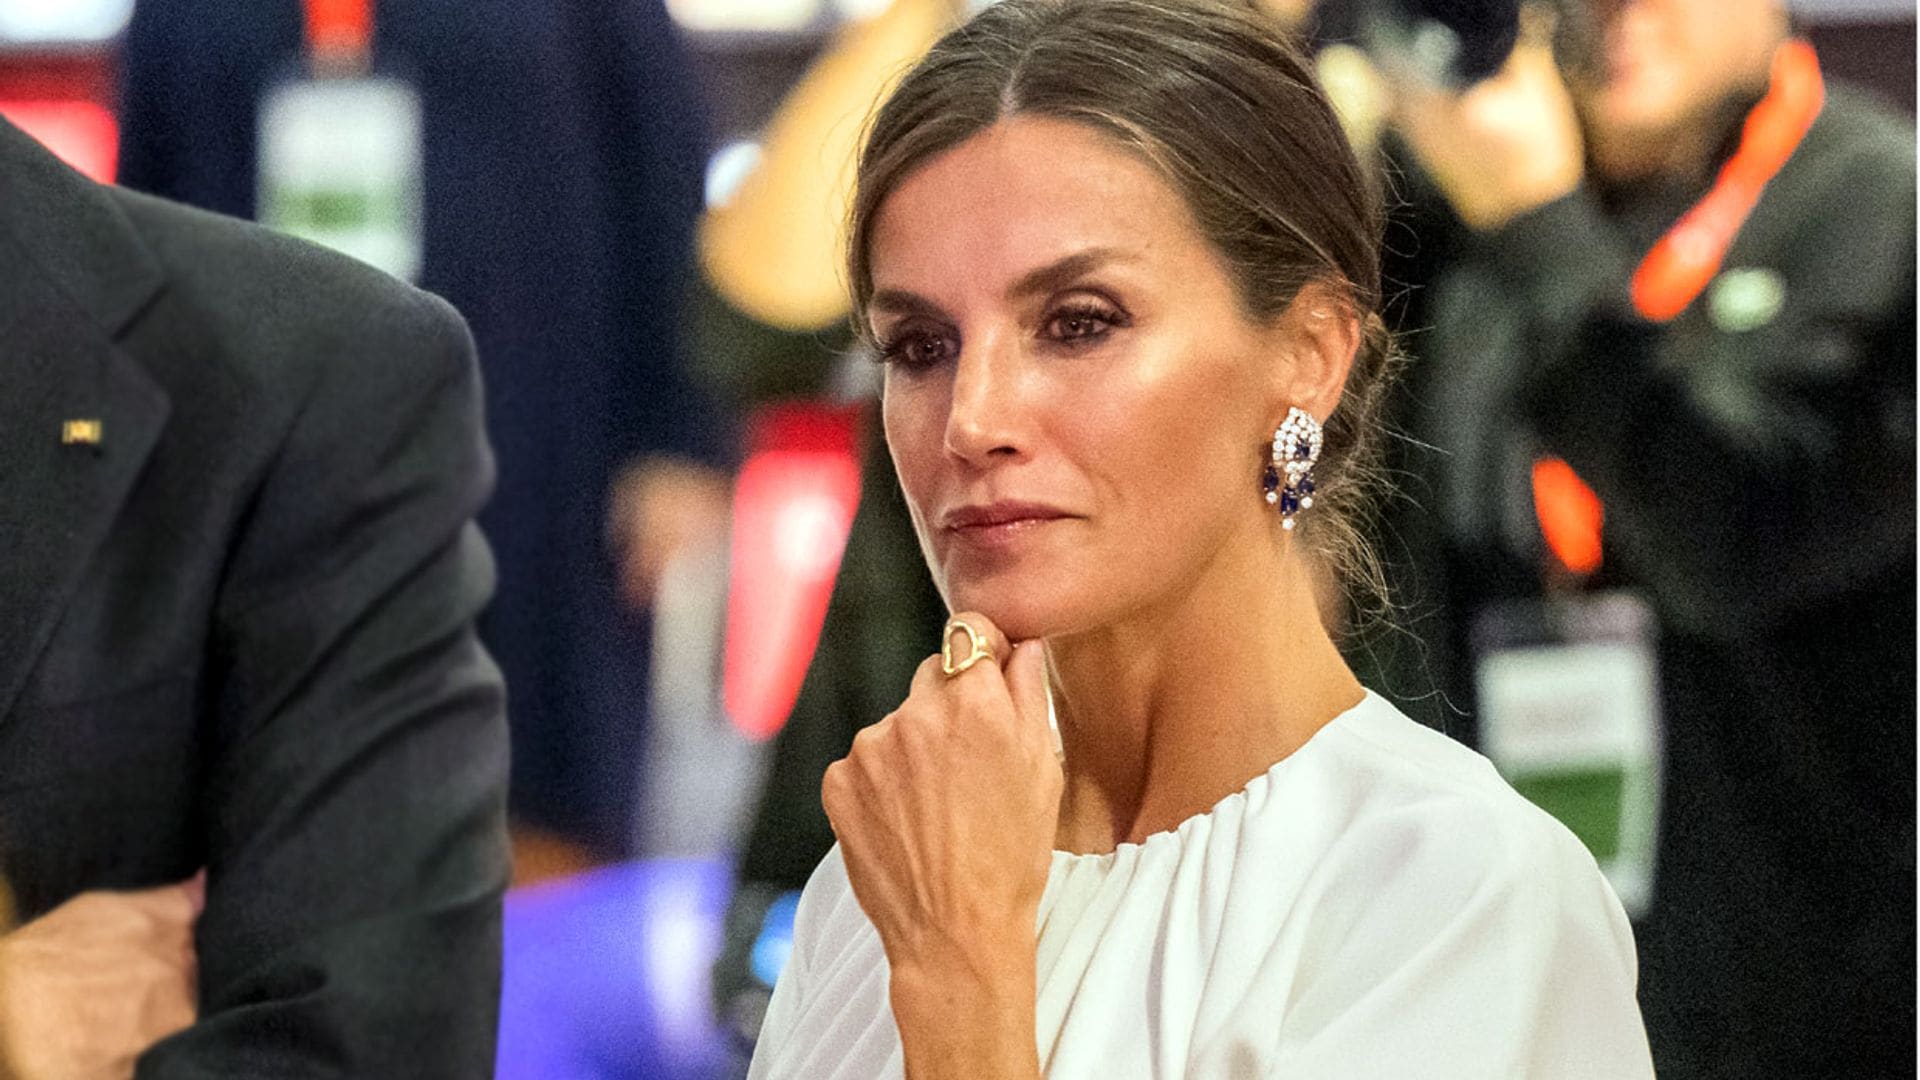 La Reina estrena un look 'made in Germany' con los pendientes de zafiro de doña Sofía